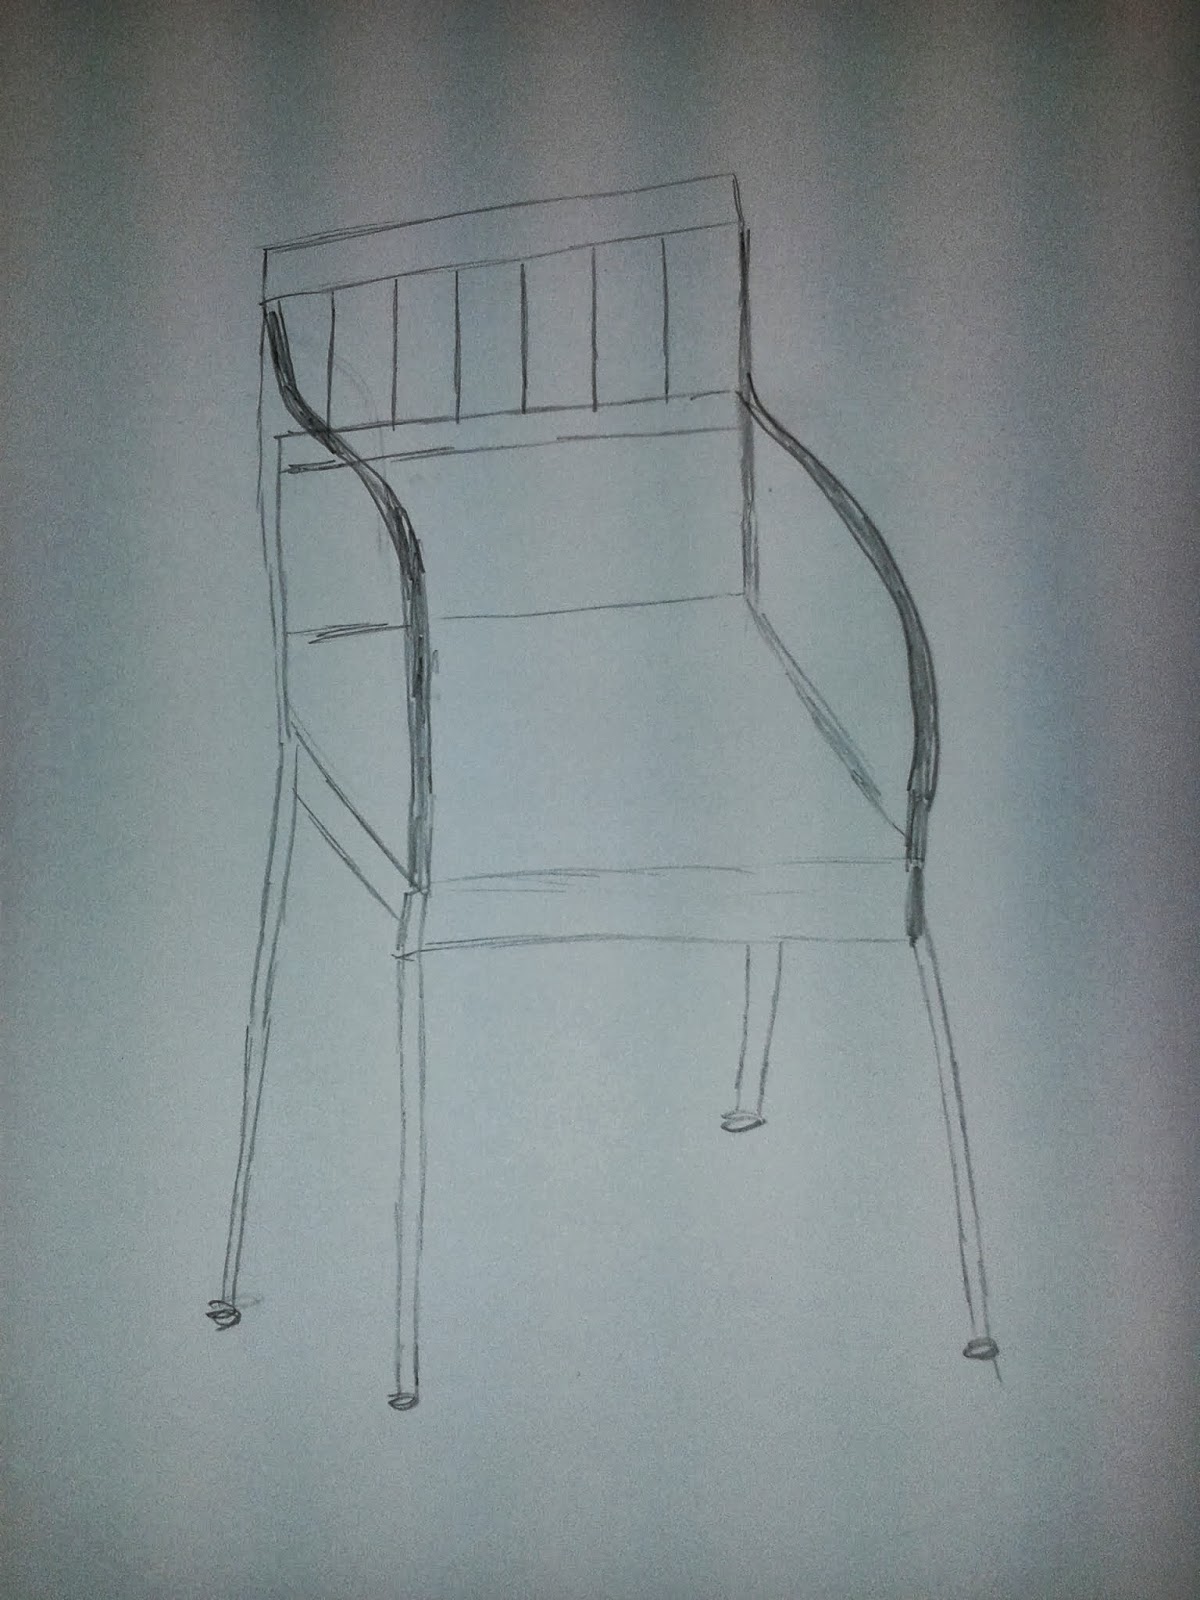 AmaDesign: Tegn en stol til et